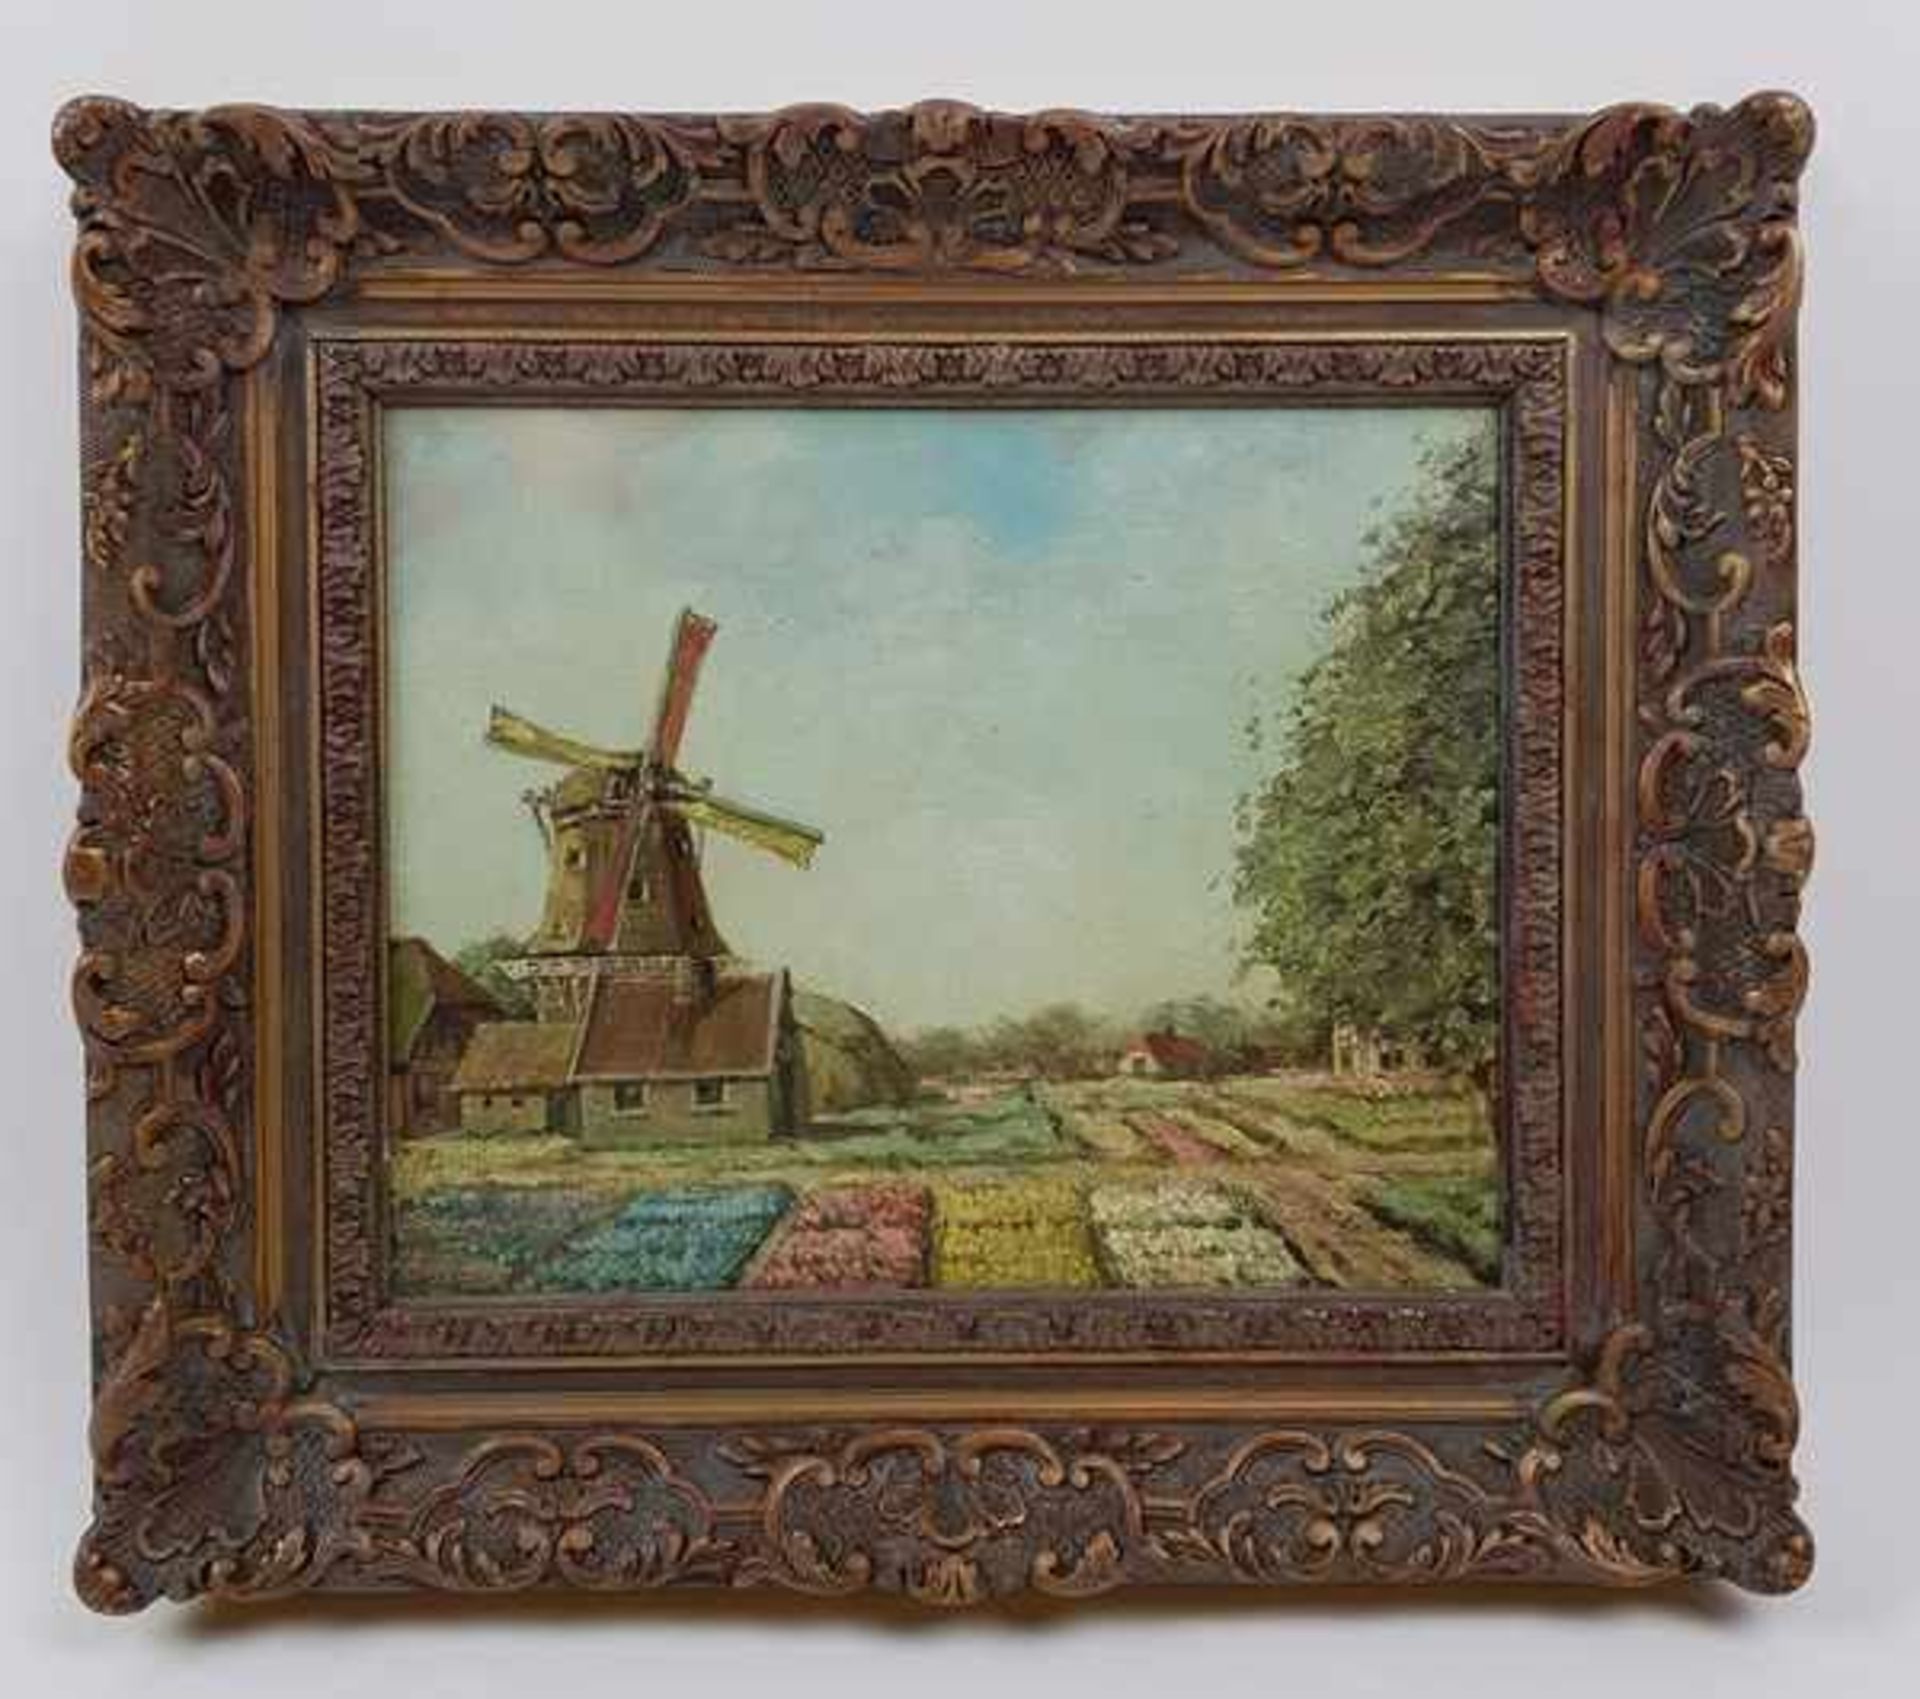 (Kunst) Schilderij, olieverf op paneelSchilderij, "Landschap met bollenvelden en molen", olieverf op